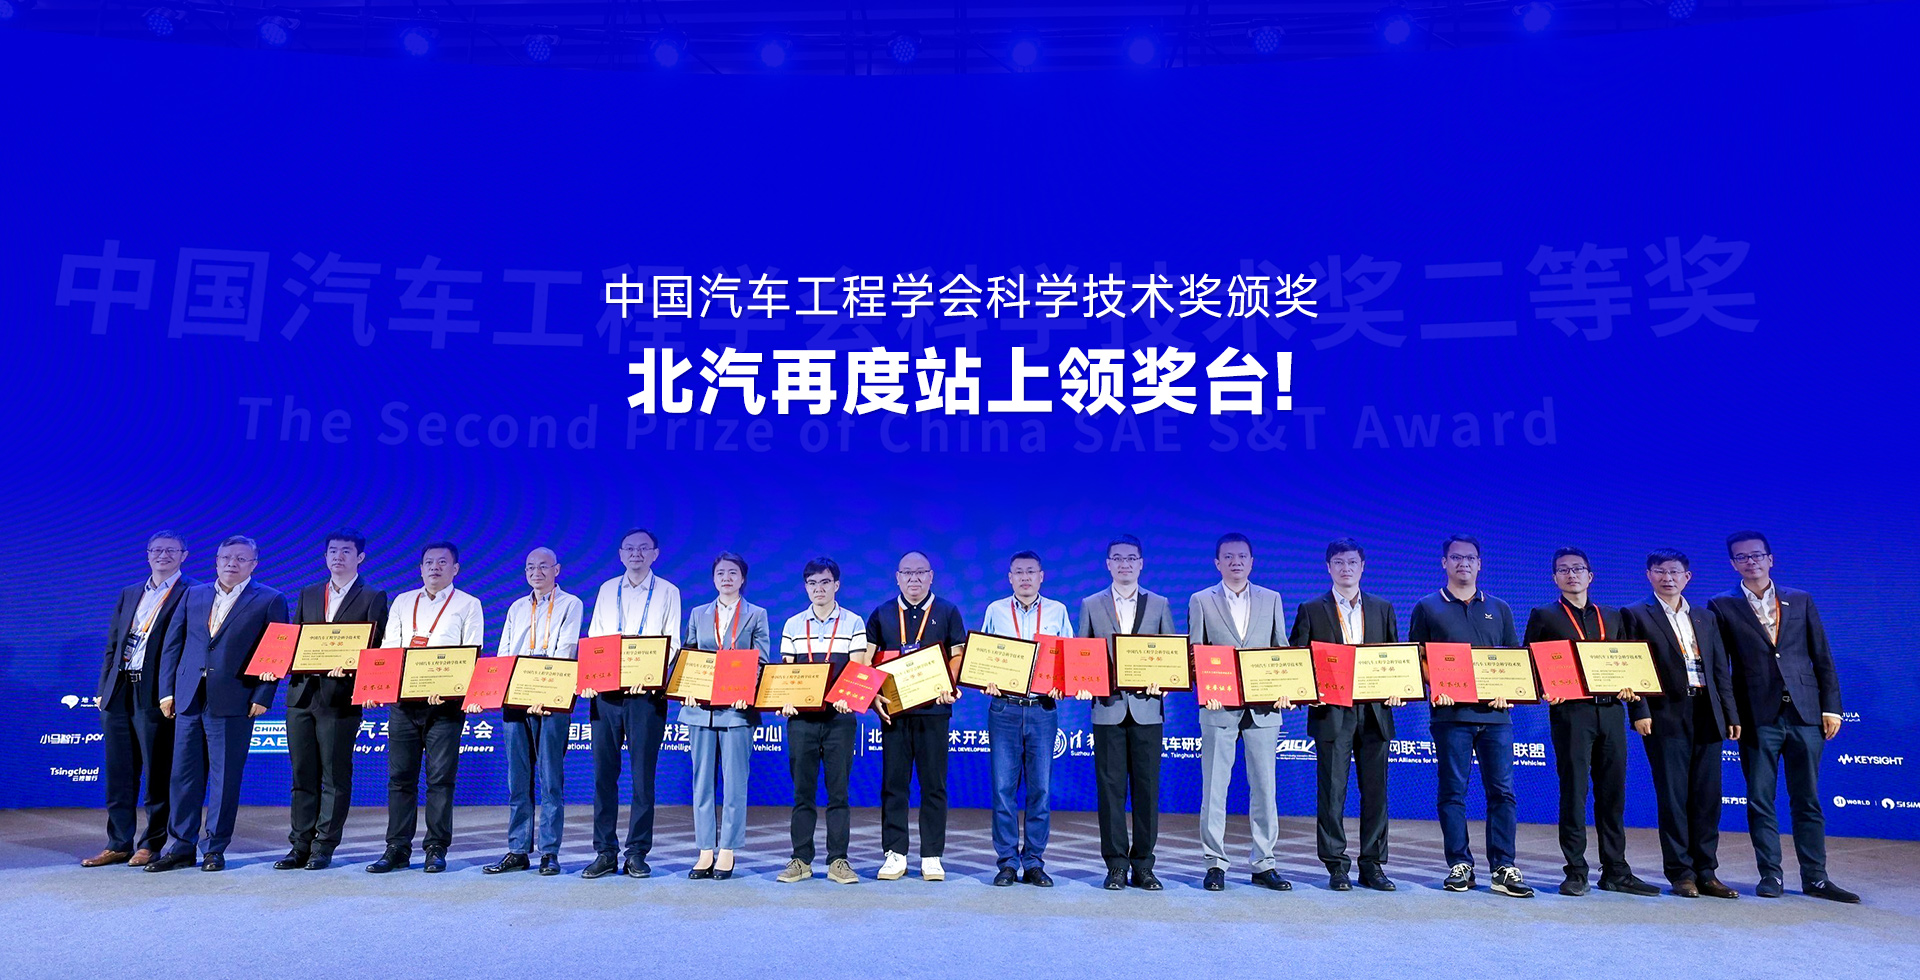 中国汽车工程学会科学技术奖颁奖，北汽再度站上领奖台!